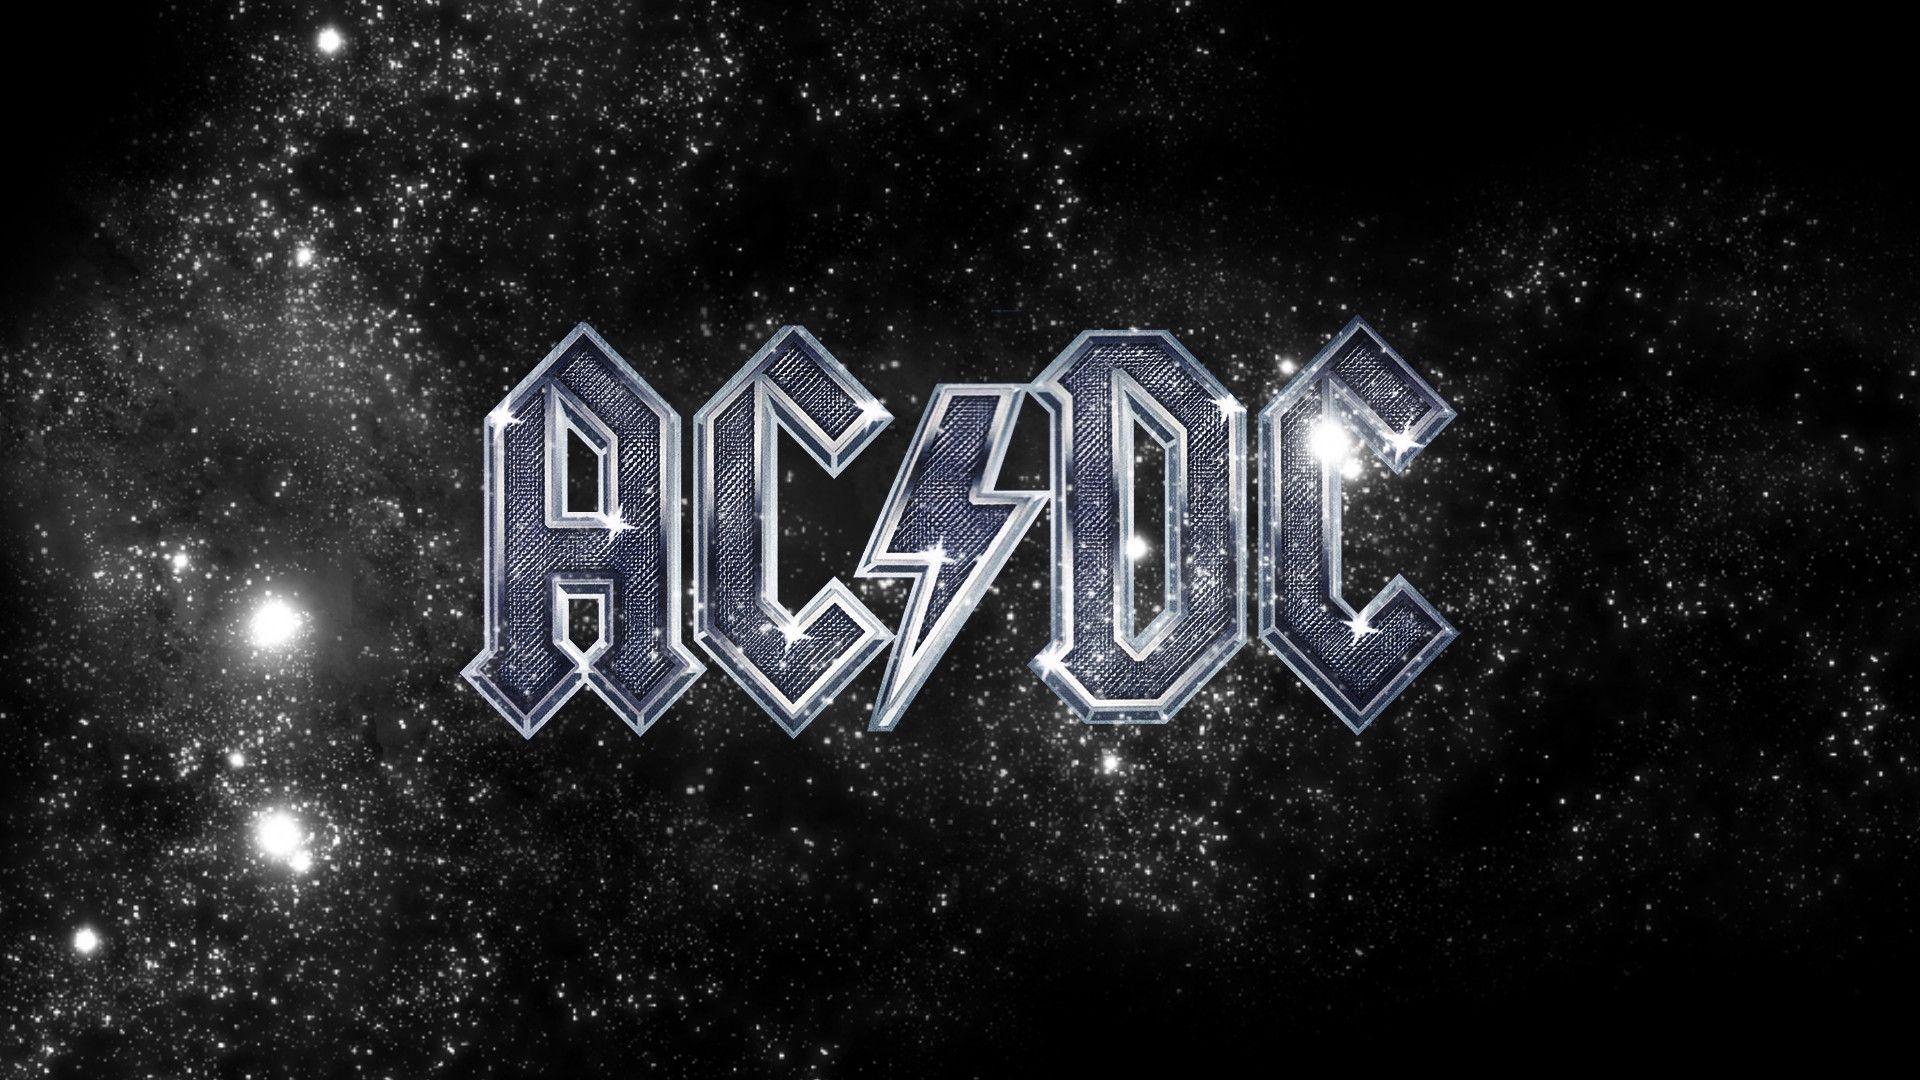 Free AC DC Desktop Wallpaper. AC DC Wallpaper